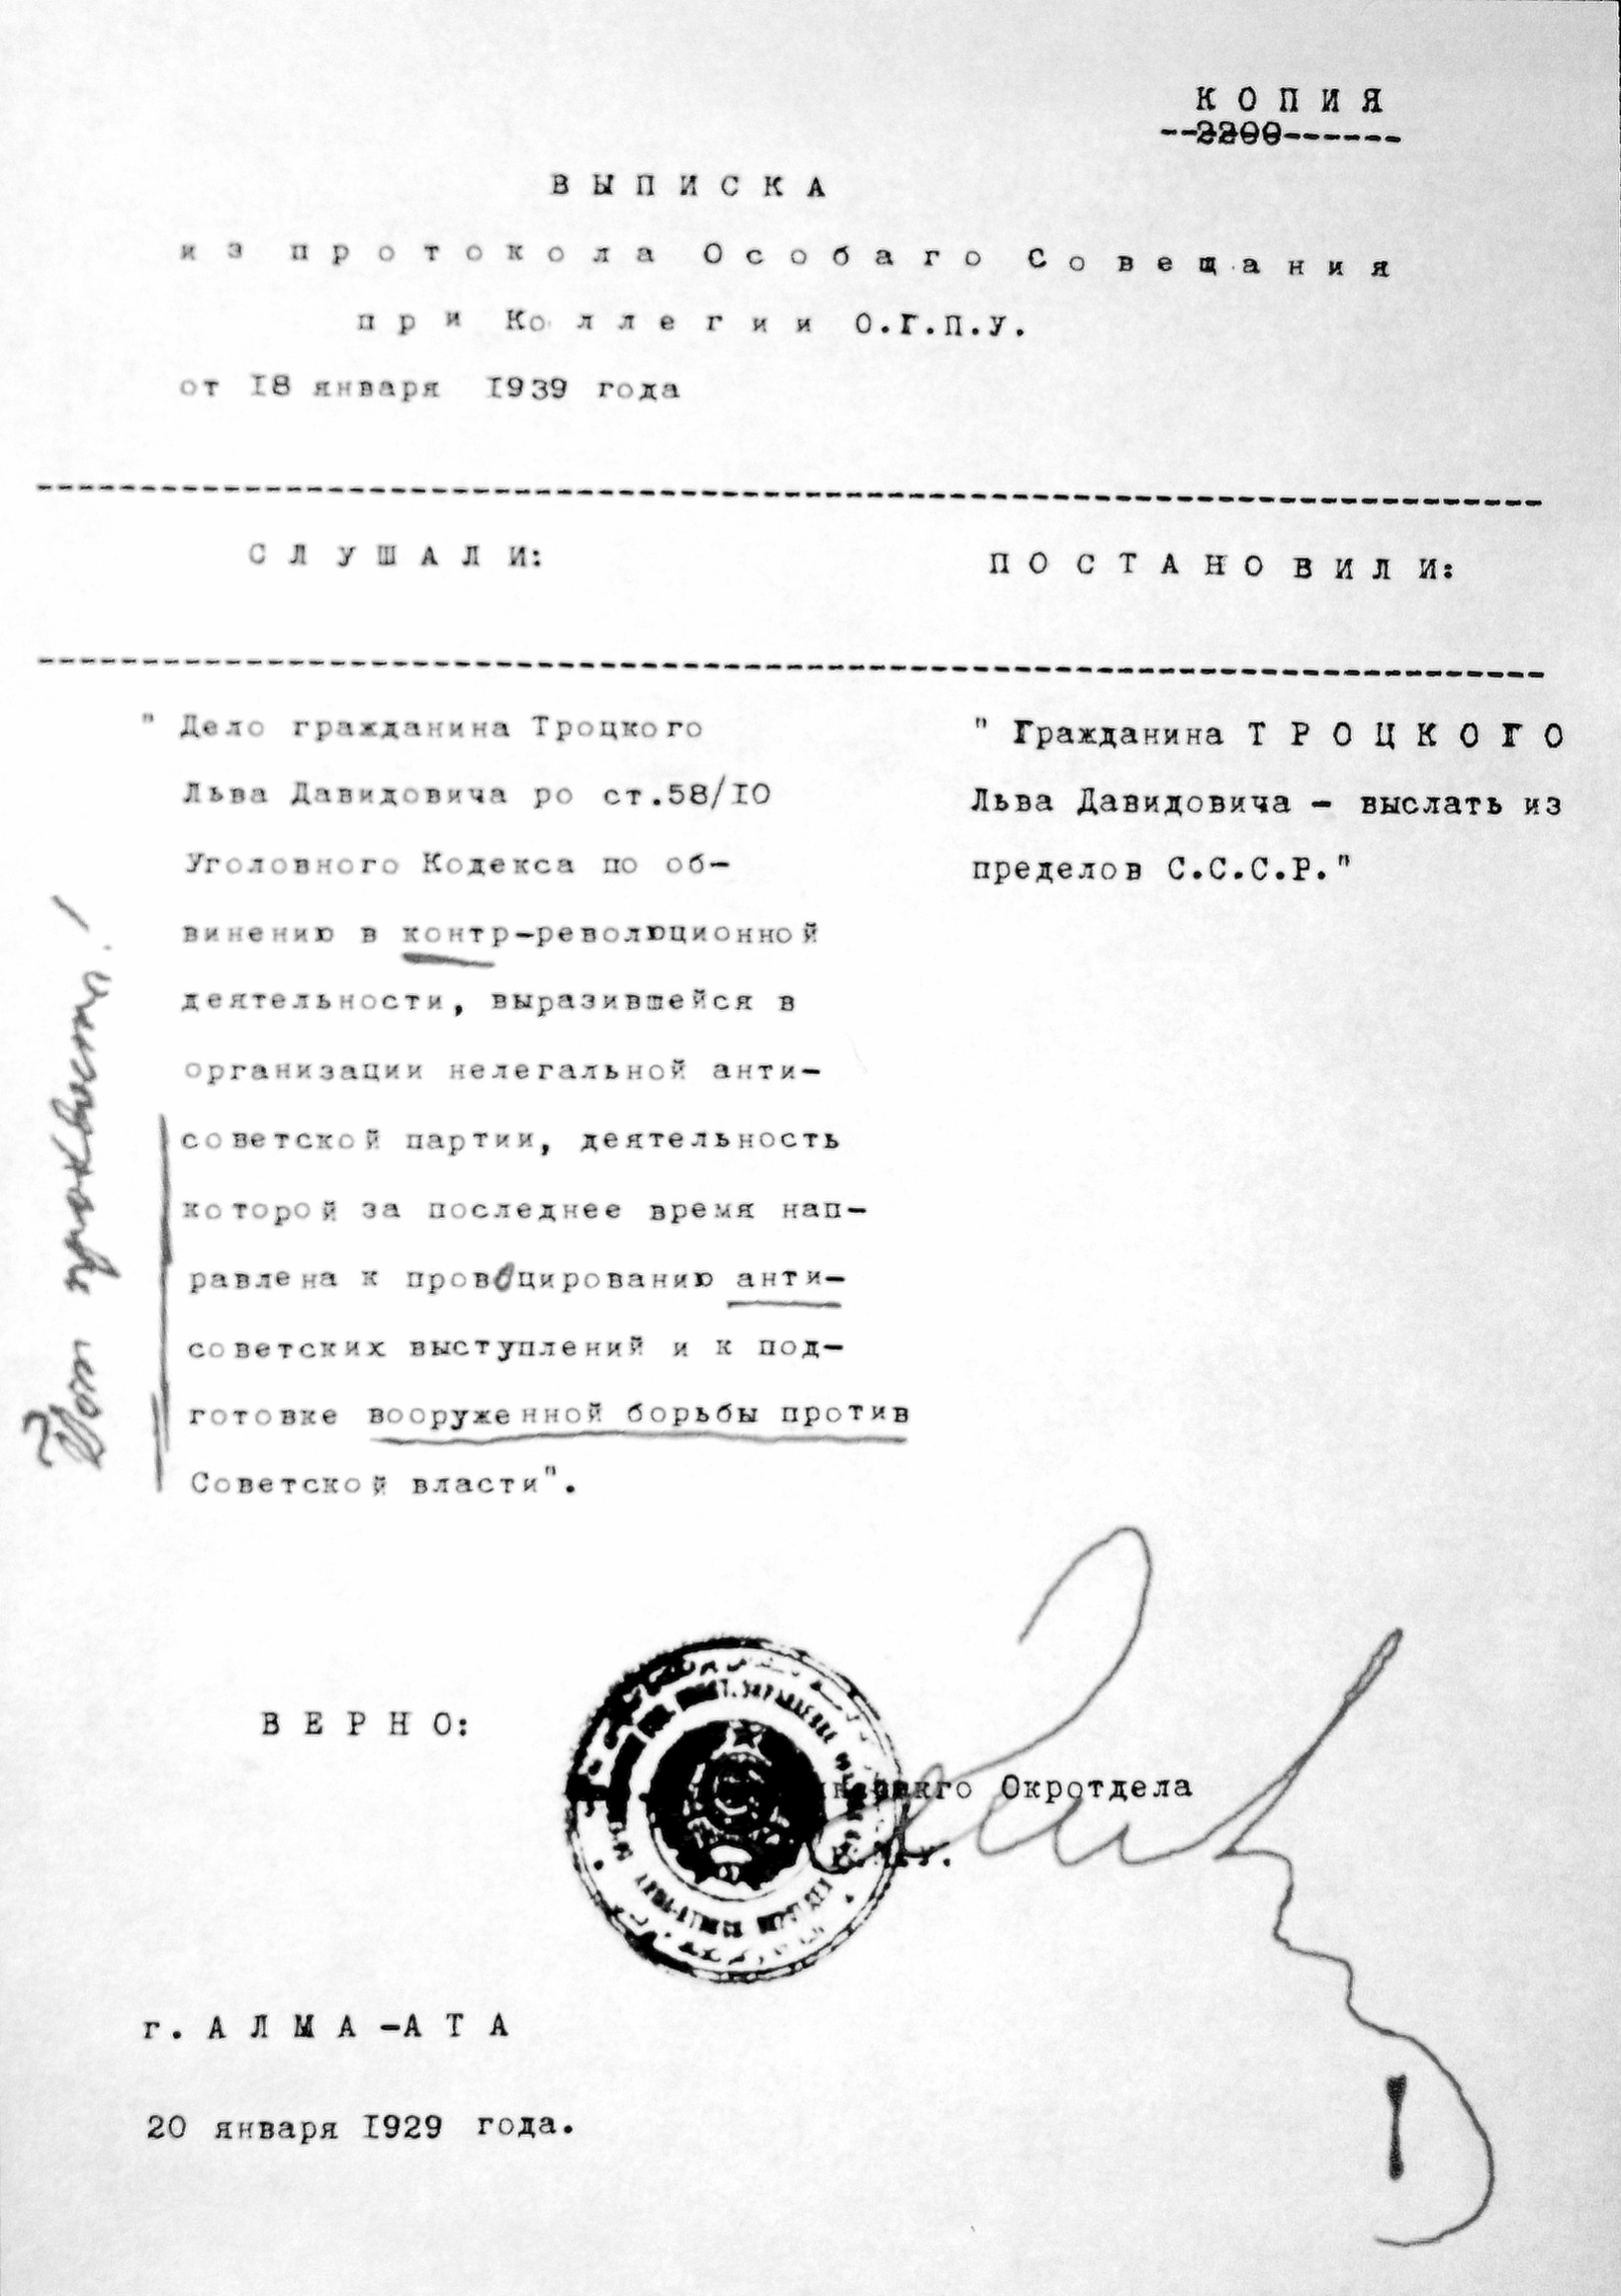 Постановление о высылке Троцкого за пределы СССР. 1929